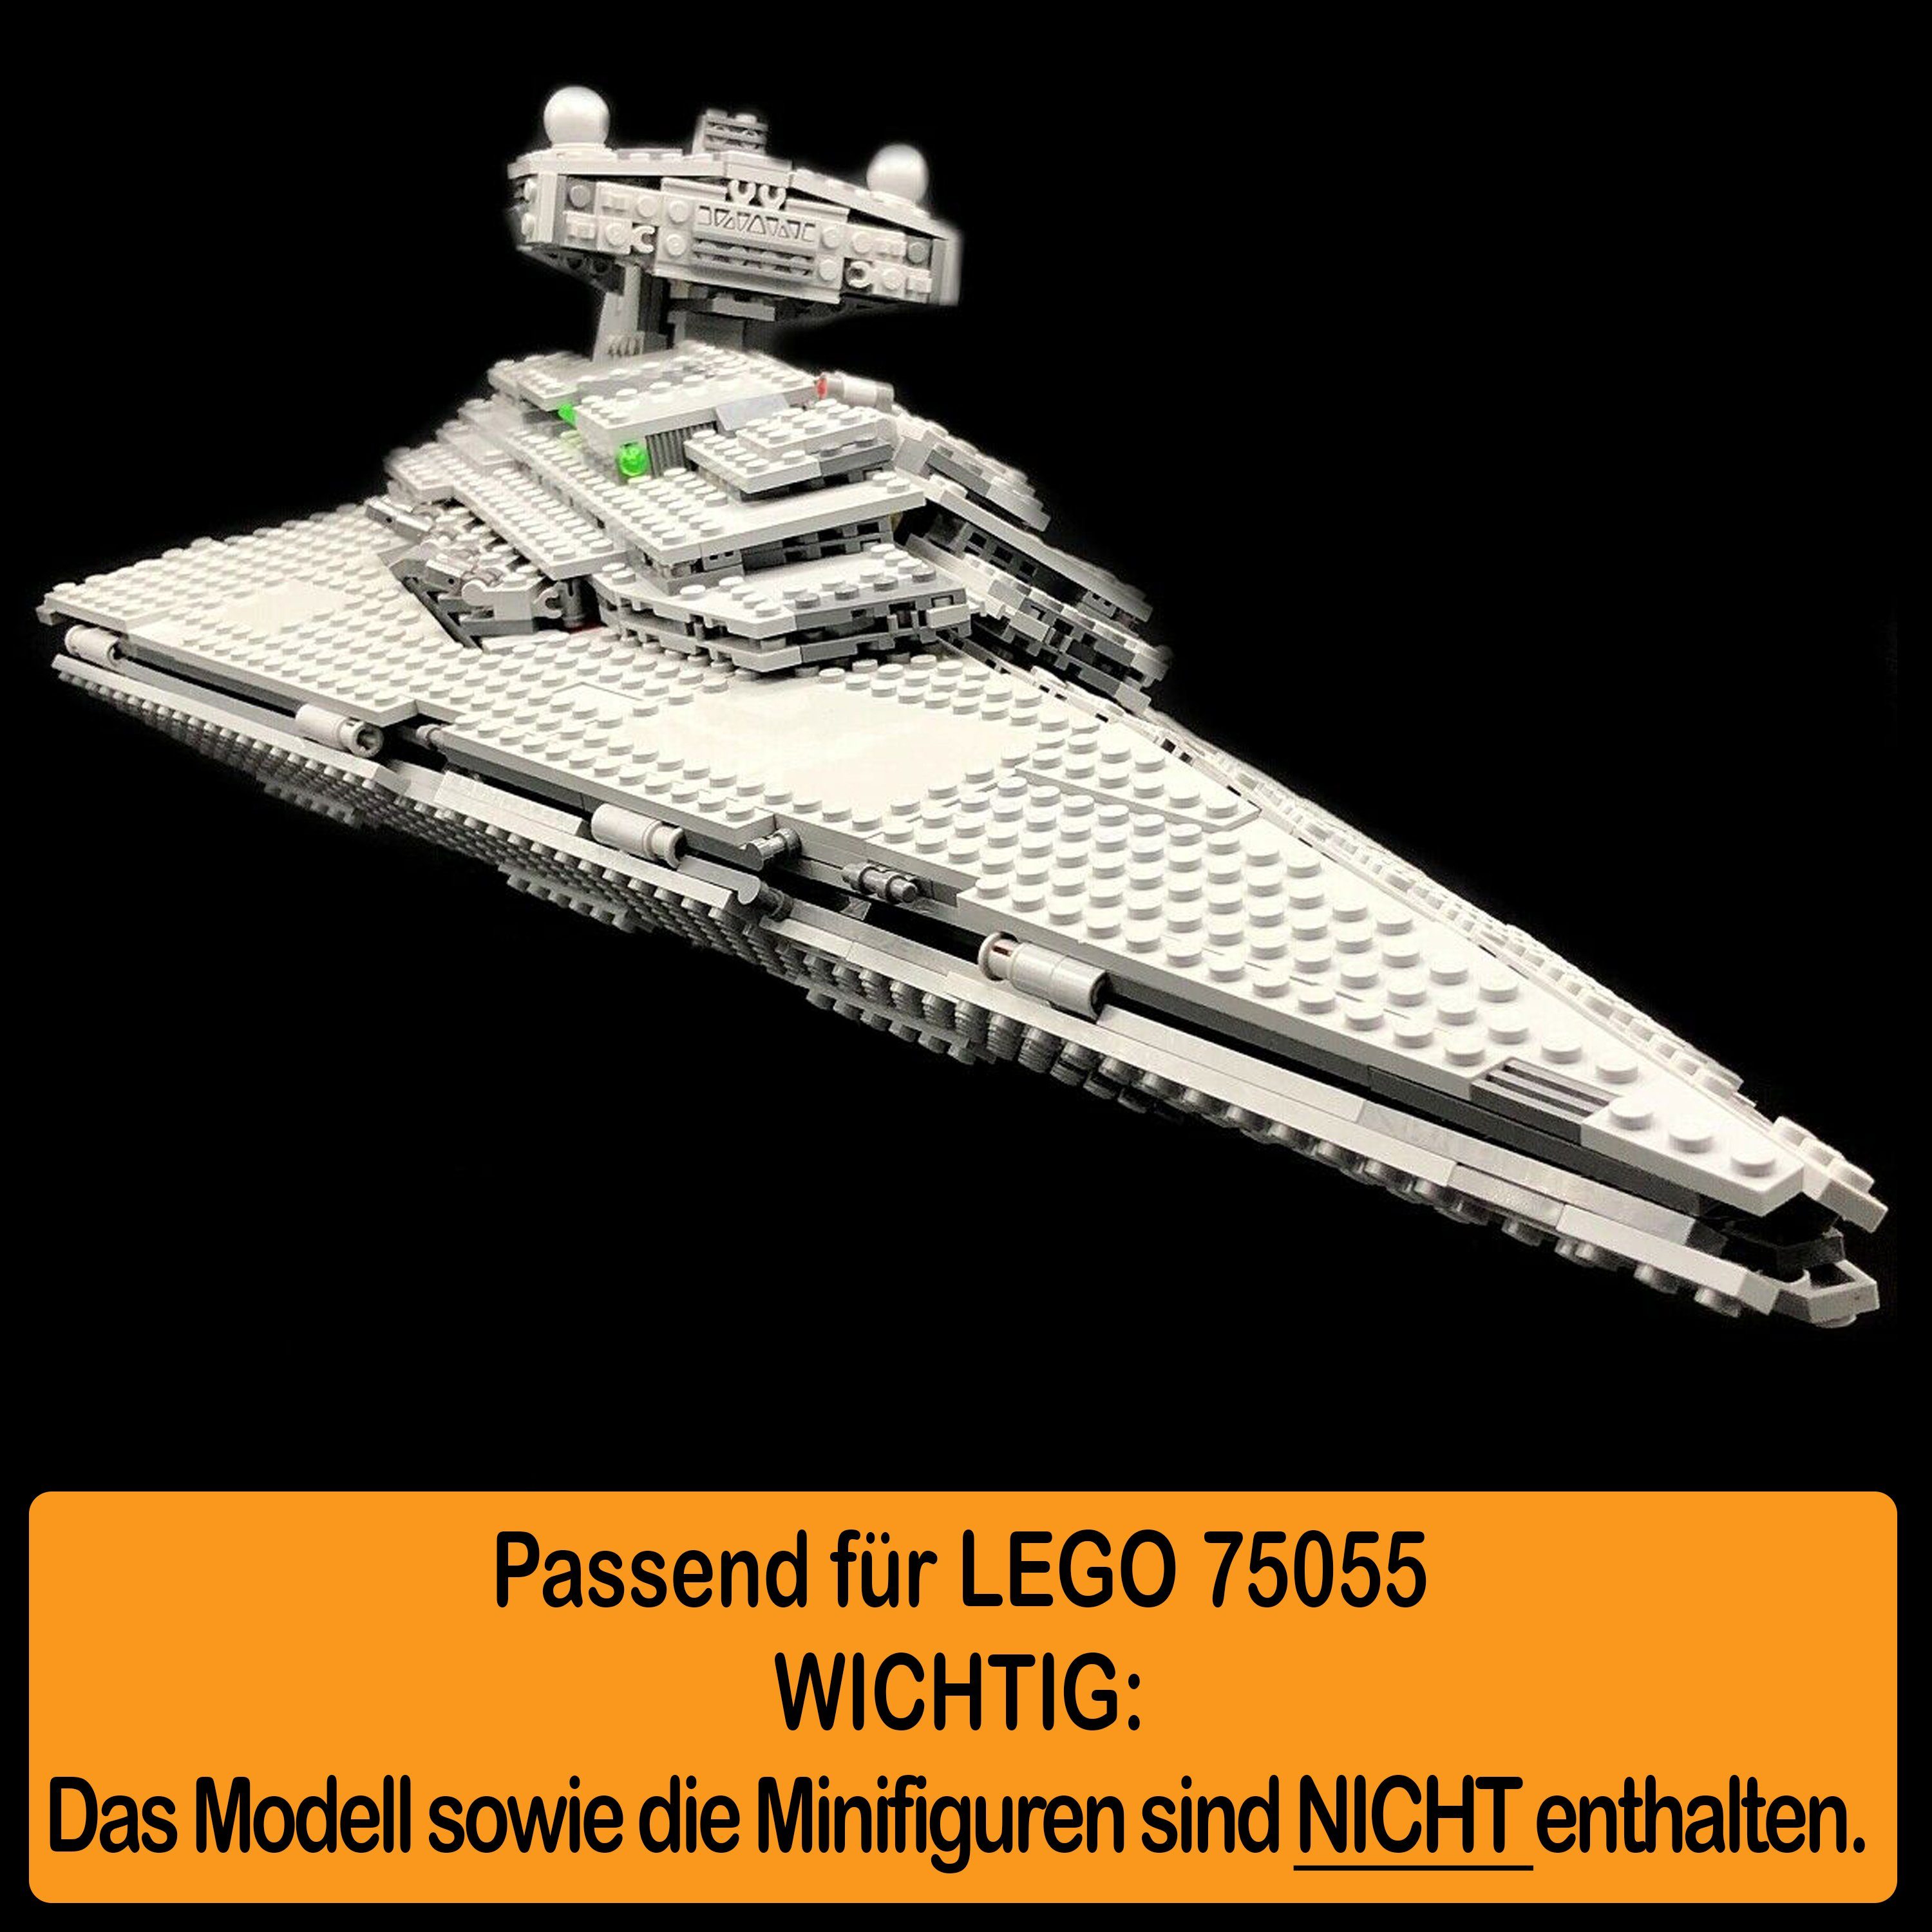 Germany selbst Acryl Destroyer Positionen Made Winkel zum Star (verschiedene 75055 zusammenbauen), AREA17 in 100% Display Imperial für Standfuß Stand und LEGO einstellbar,